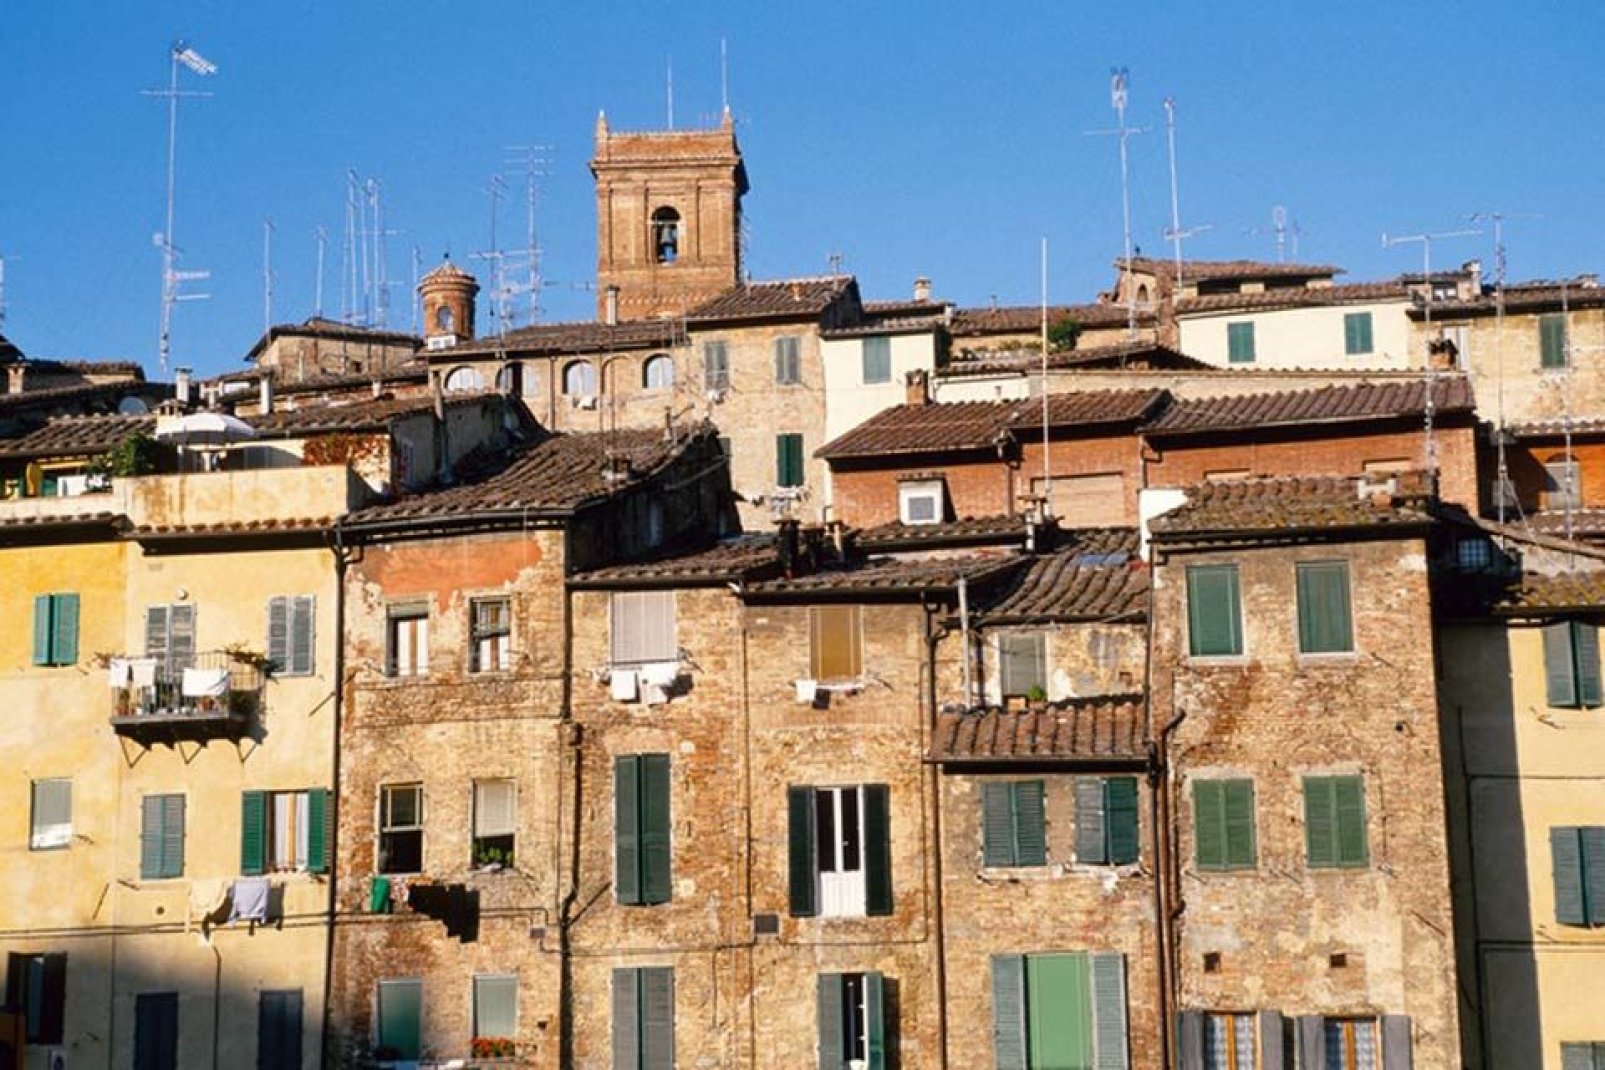 Siena è ricca di numerosissime strade pittoresche, circondate dalle antiche case alte e austere